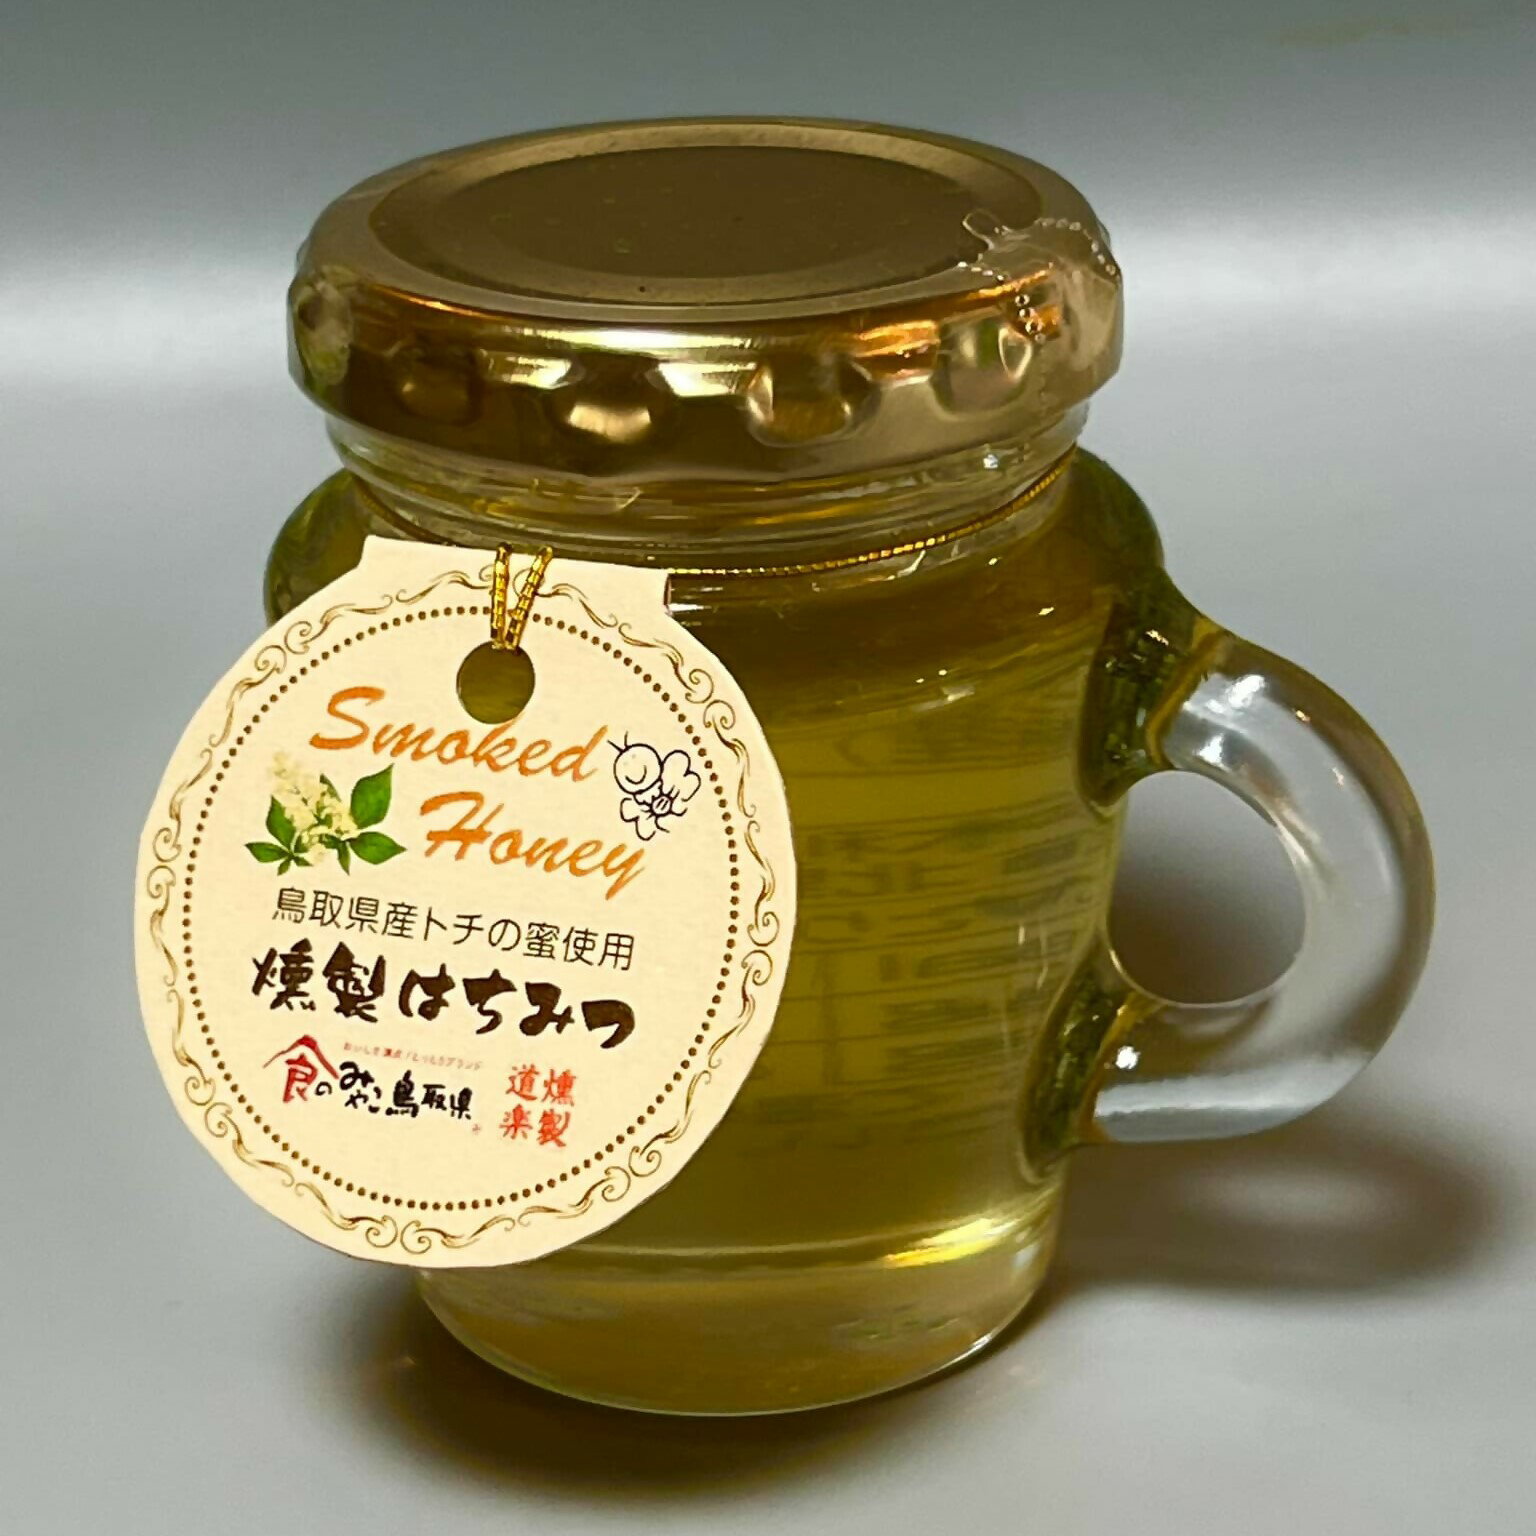 【ふるさと納税】燻製 蜂蜜 120g×2 240g はちみつ 蜂蜜 ハチミツ スイーツ 常温 くんせい